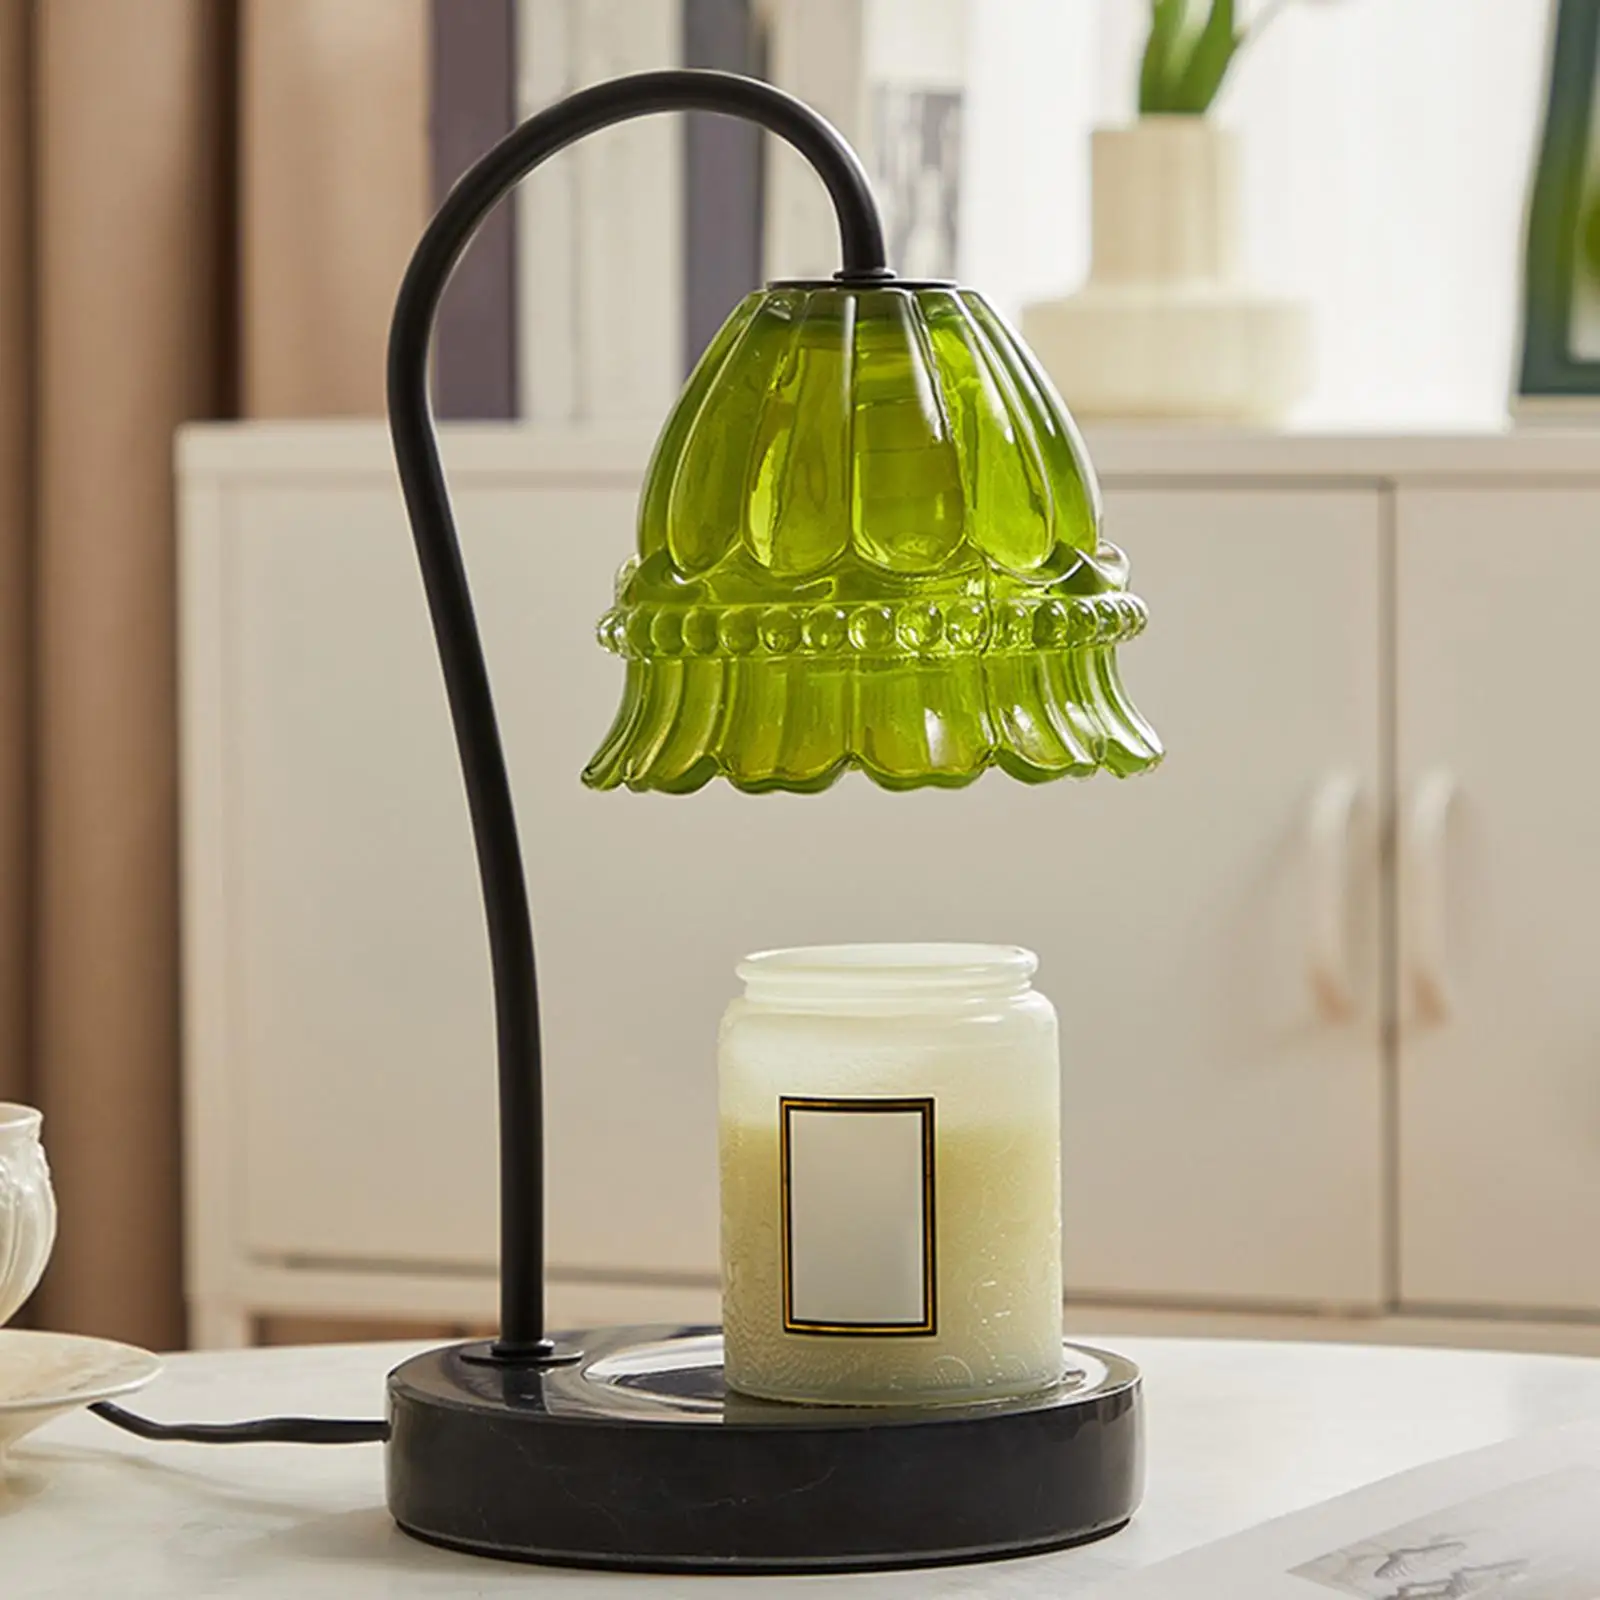 

Лампа в европейском стиле для подогрева свечей, прикроватная лампа, плавильный светильник с регулируемой яркостью для комнаты, офиса, подар...